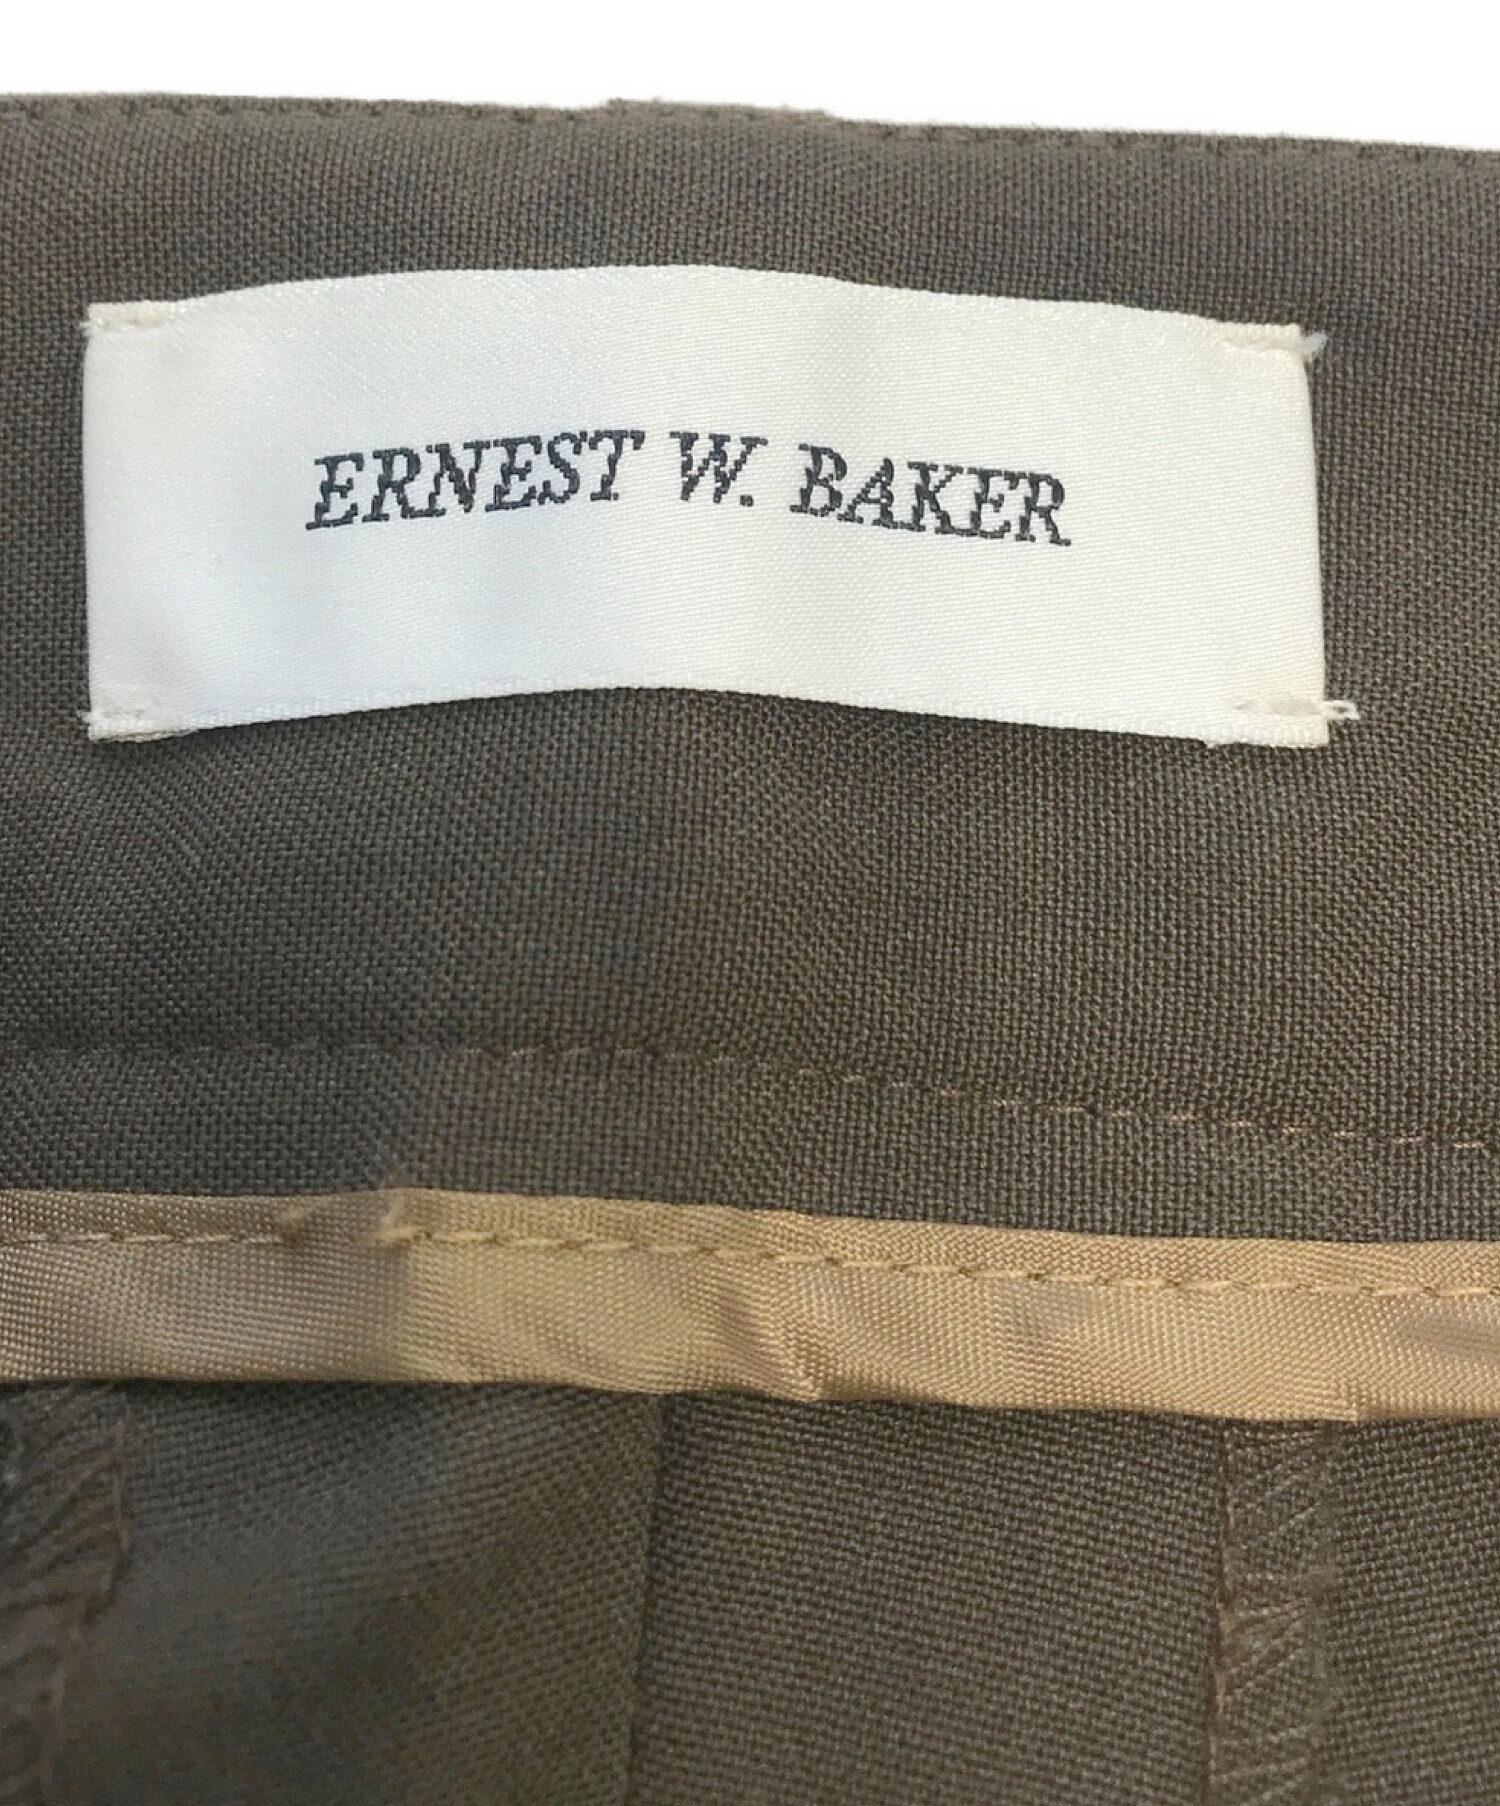 中古・古着通販】Ernest w baker (アーネストダブルベーカー) センター